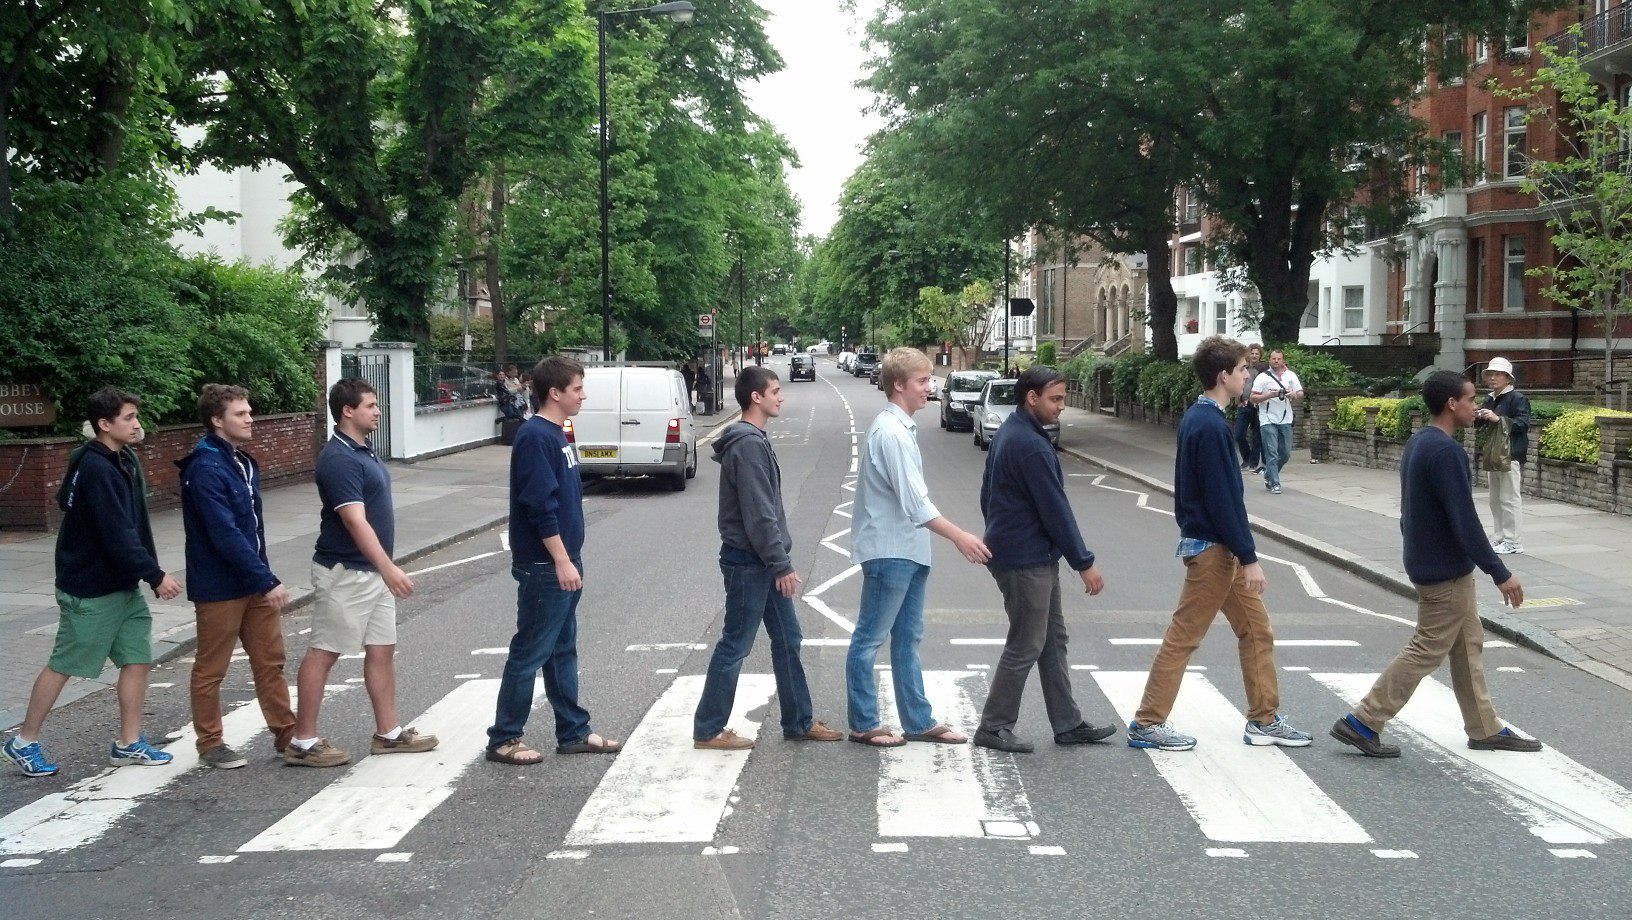  Abbey Road - London 